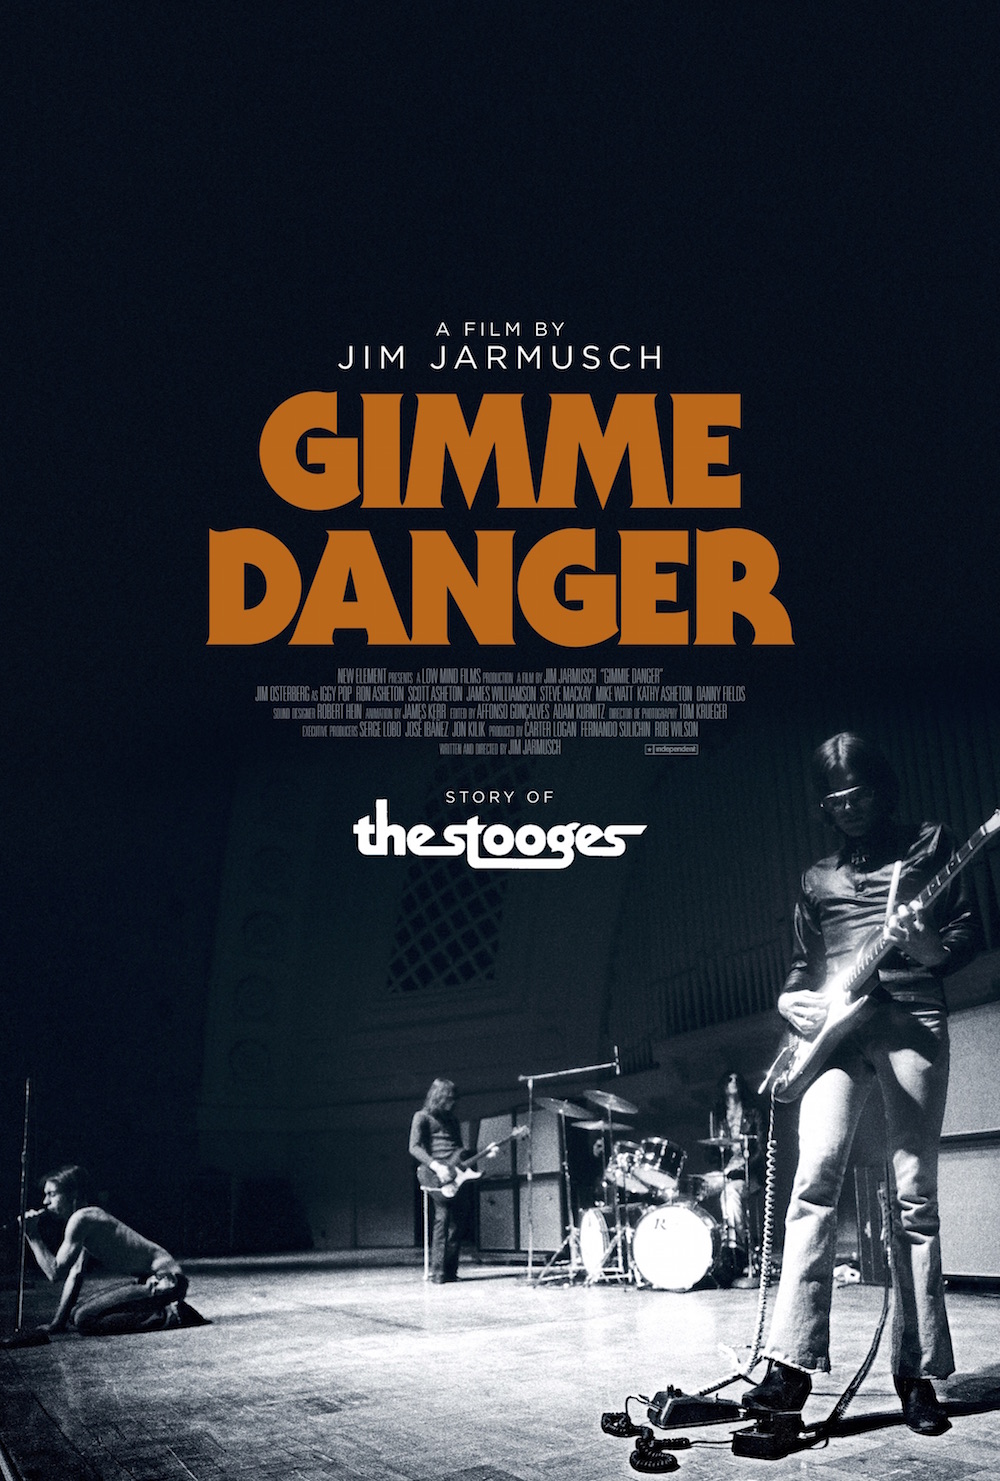 Gimme Danger (Jim Jarmusch, 2016)